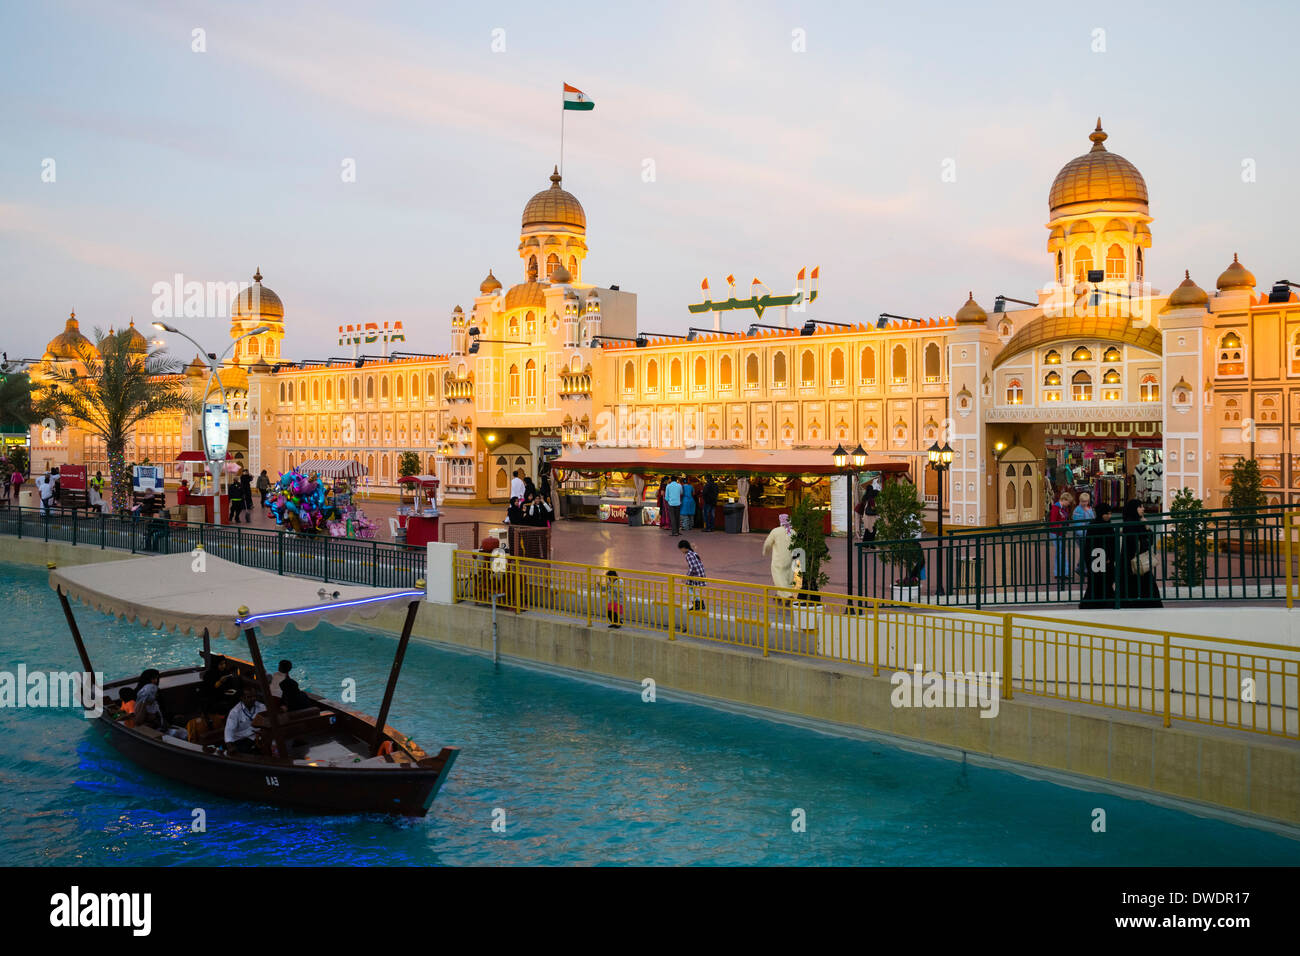 India Pavilion e canal con abra tour in barca al Villaggio Globale turistico culturali attrazione in Dubai Emirati Arabi Uniti Foto Stock